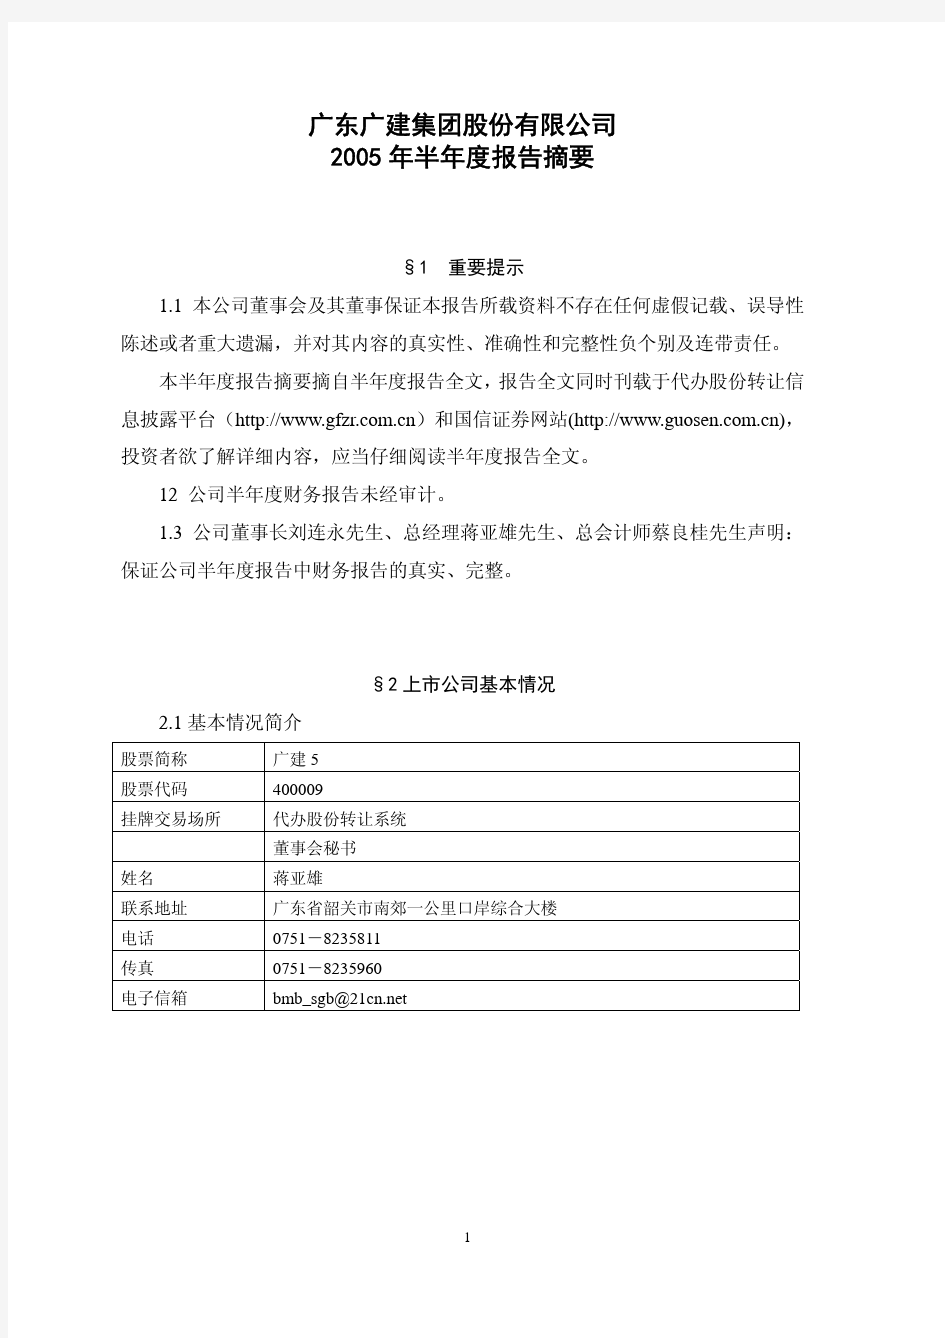 1广东广建集团股份有限公司2005年半年度报告摘要